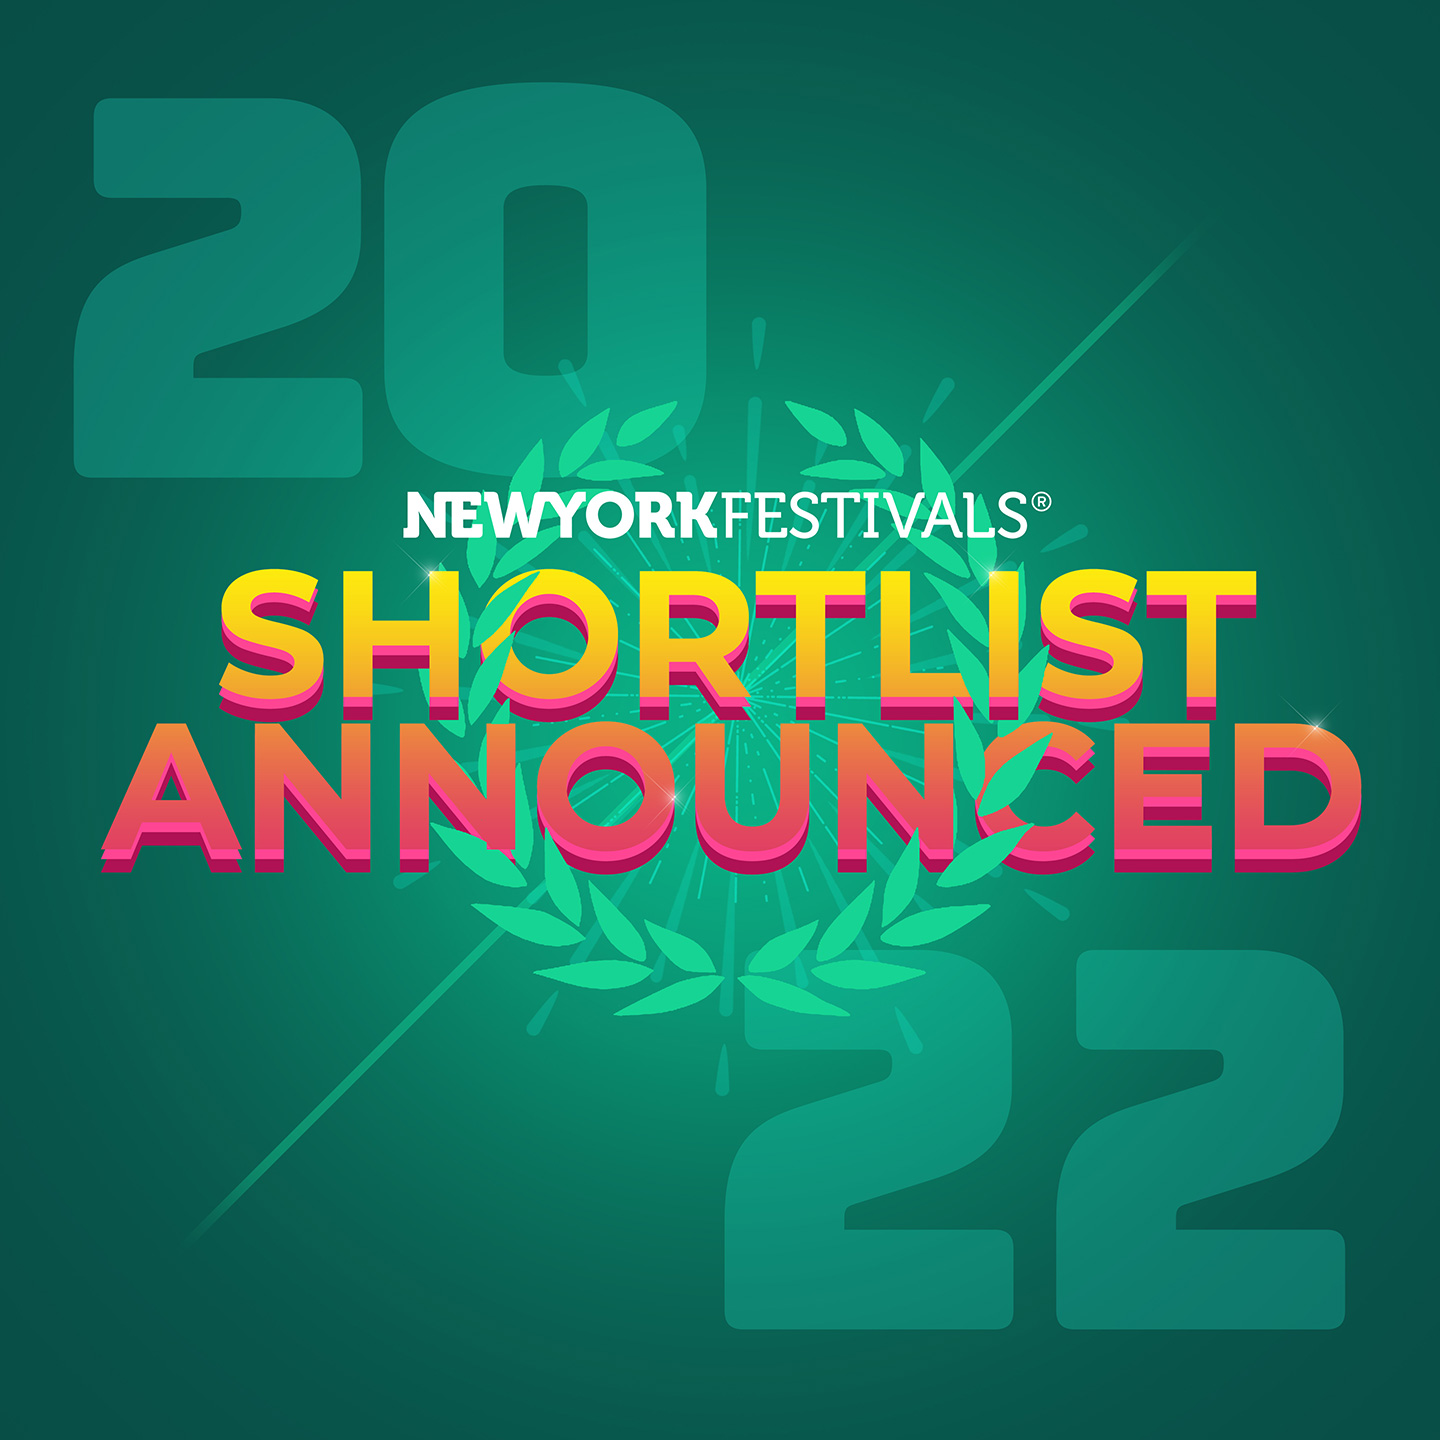 Awards New York Festivals 2022 Advertising Awards shortlist announced